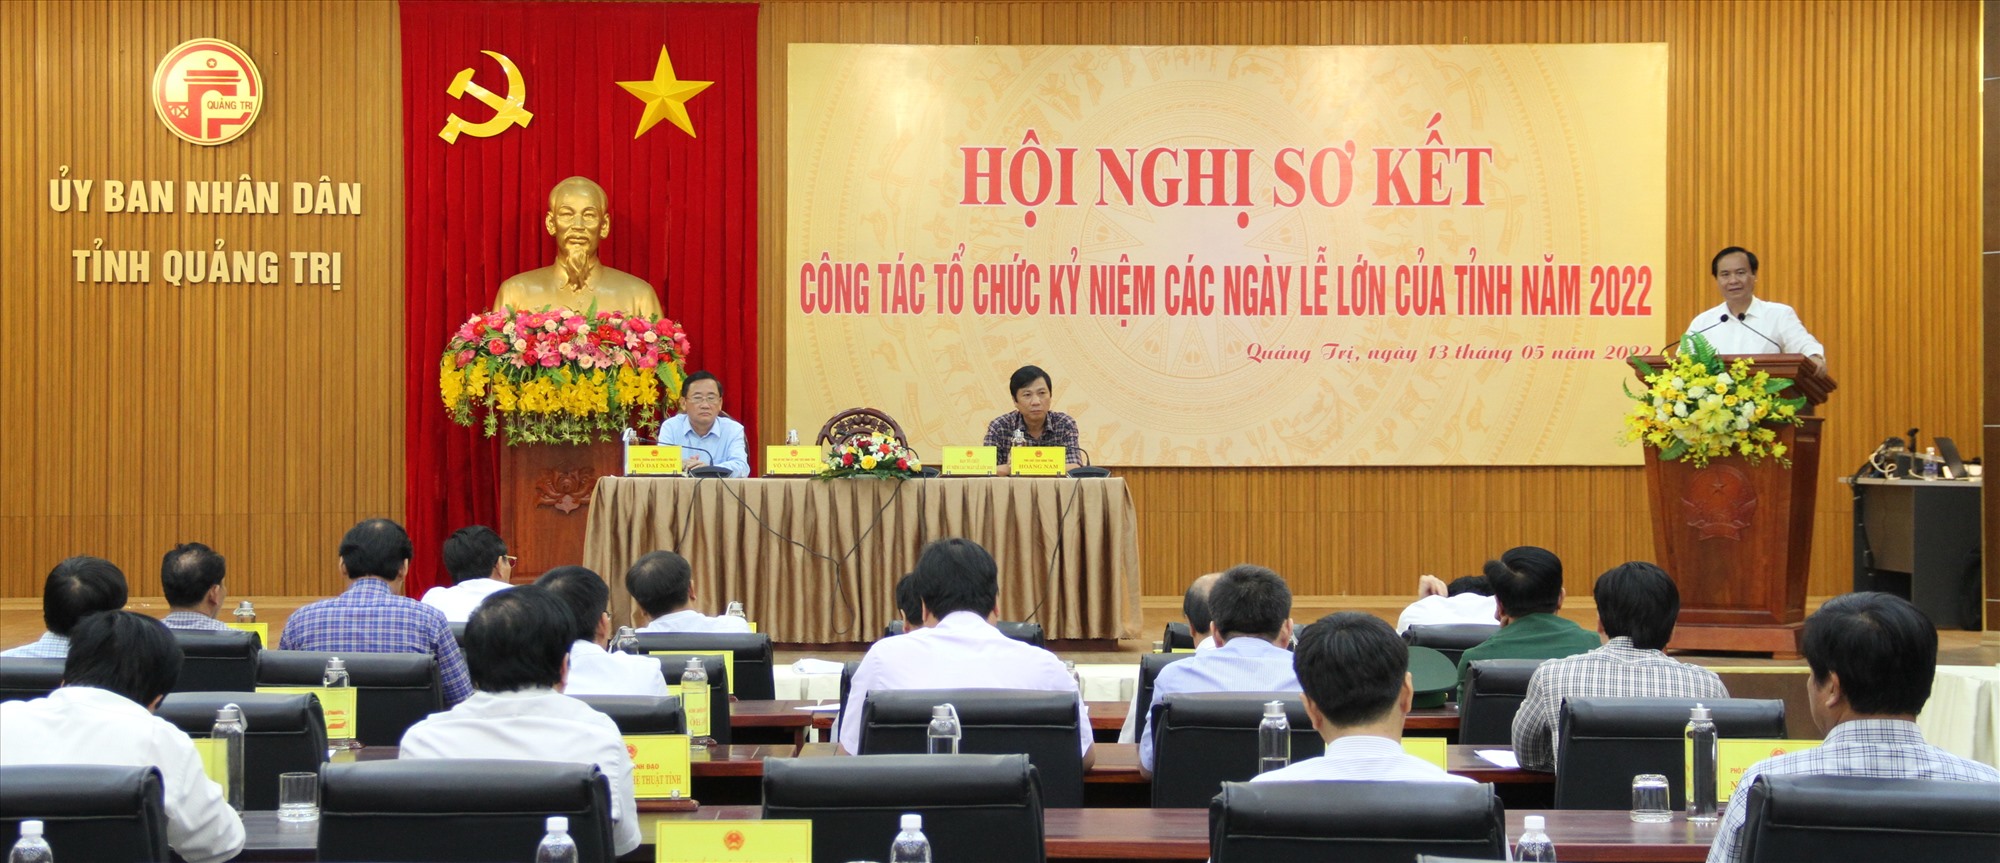 Chủ tịch UBND tỉnh Võ Văn Hưng phát biểu tại hội nghị - Ảnh: MĐ